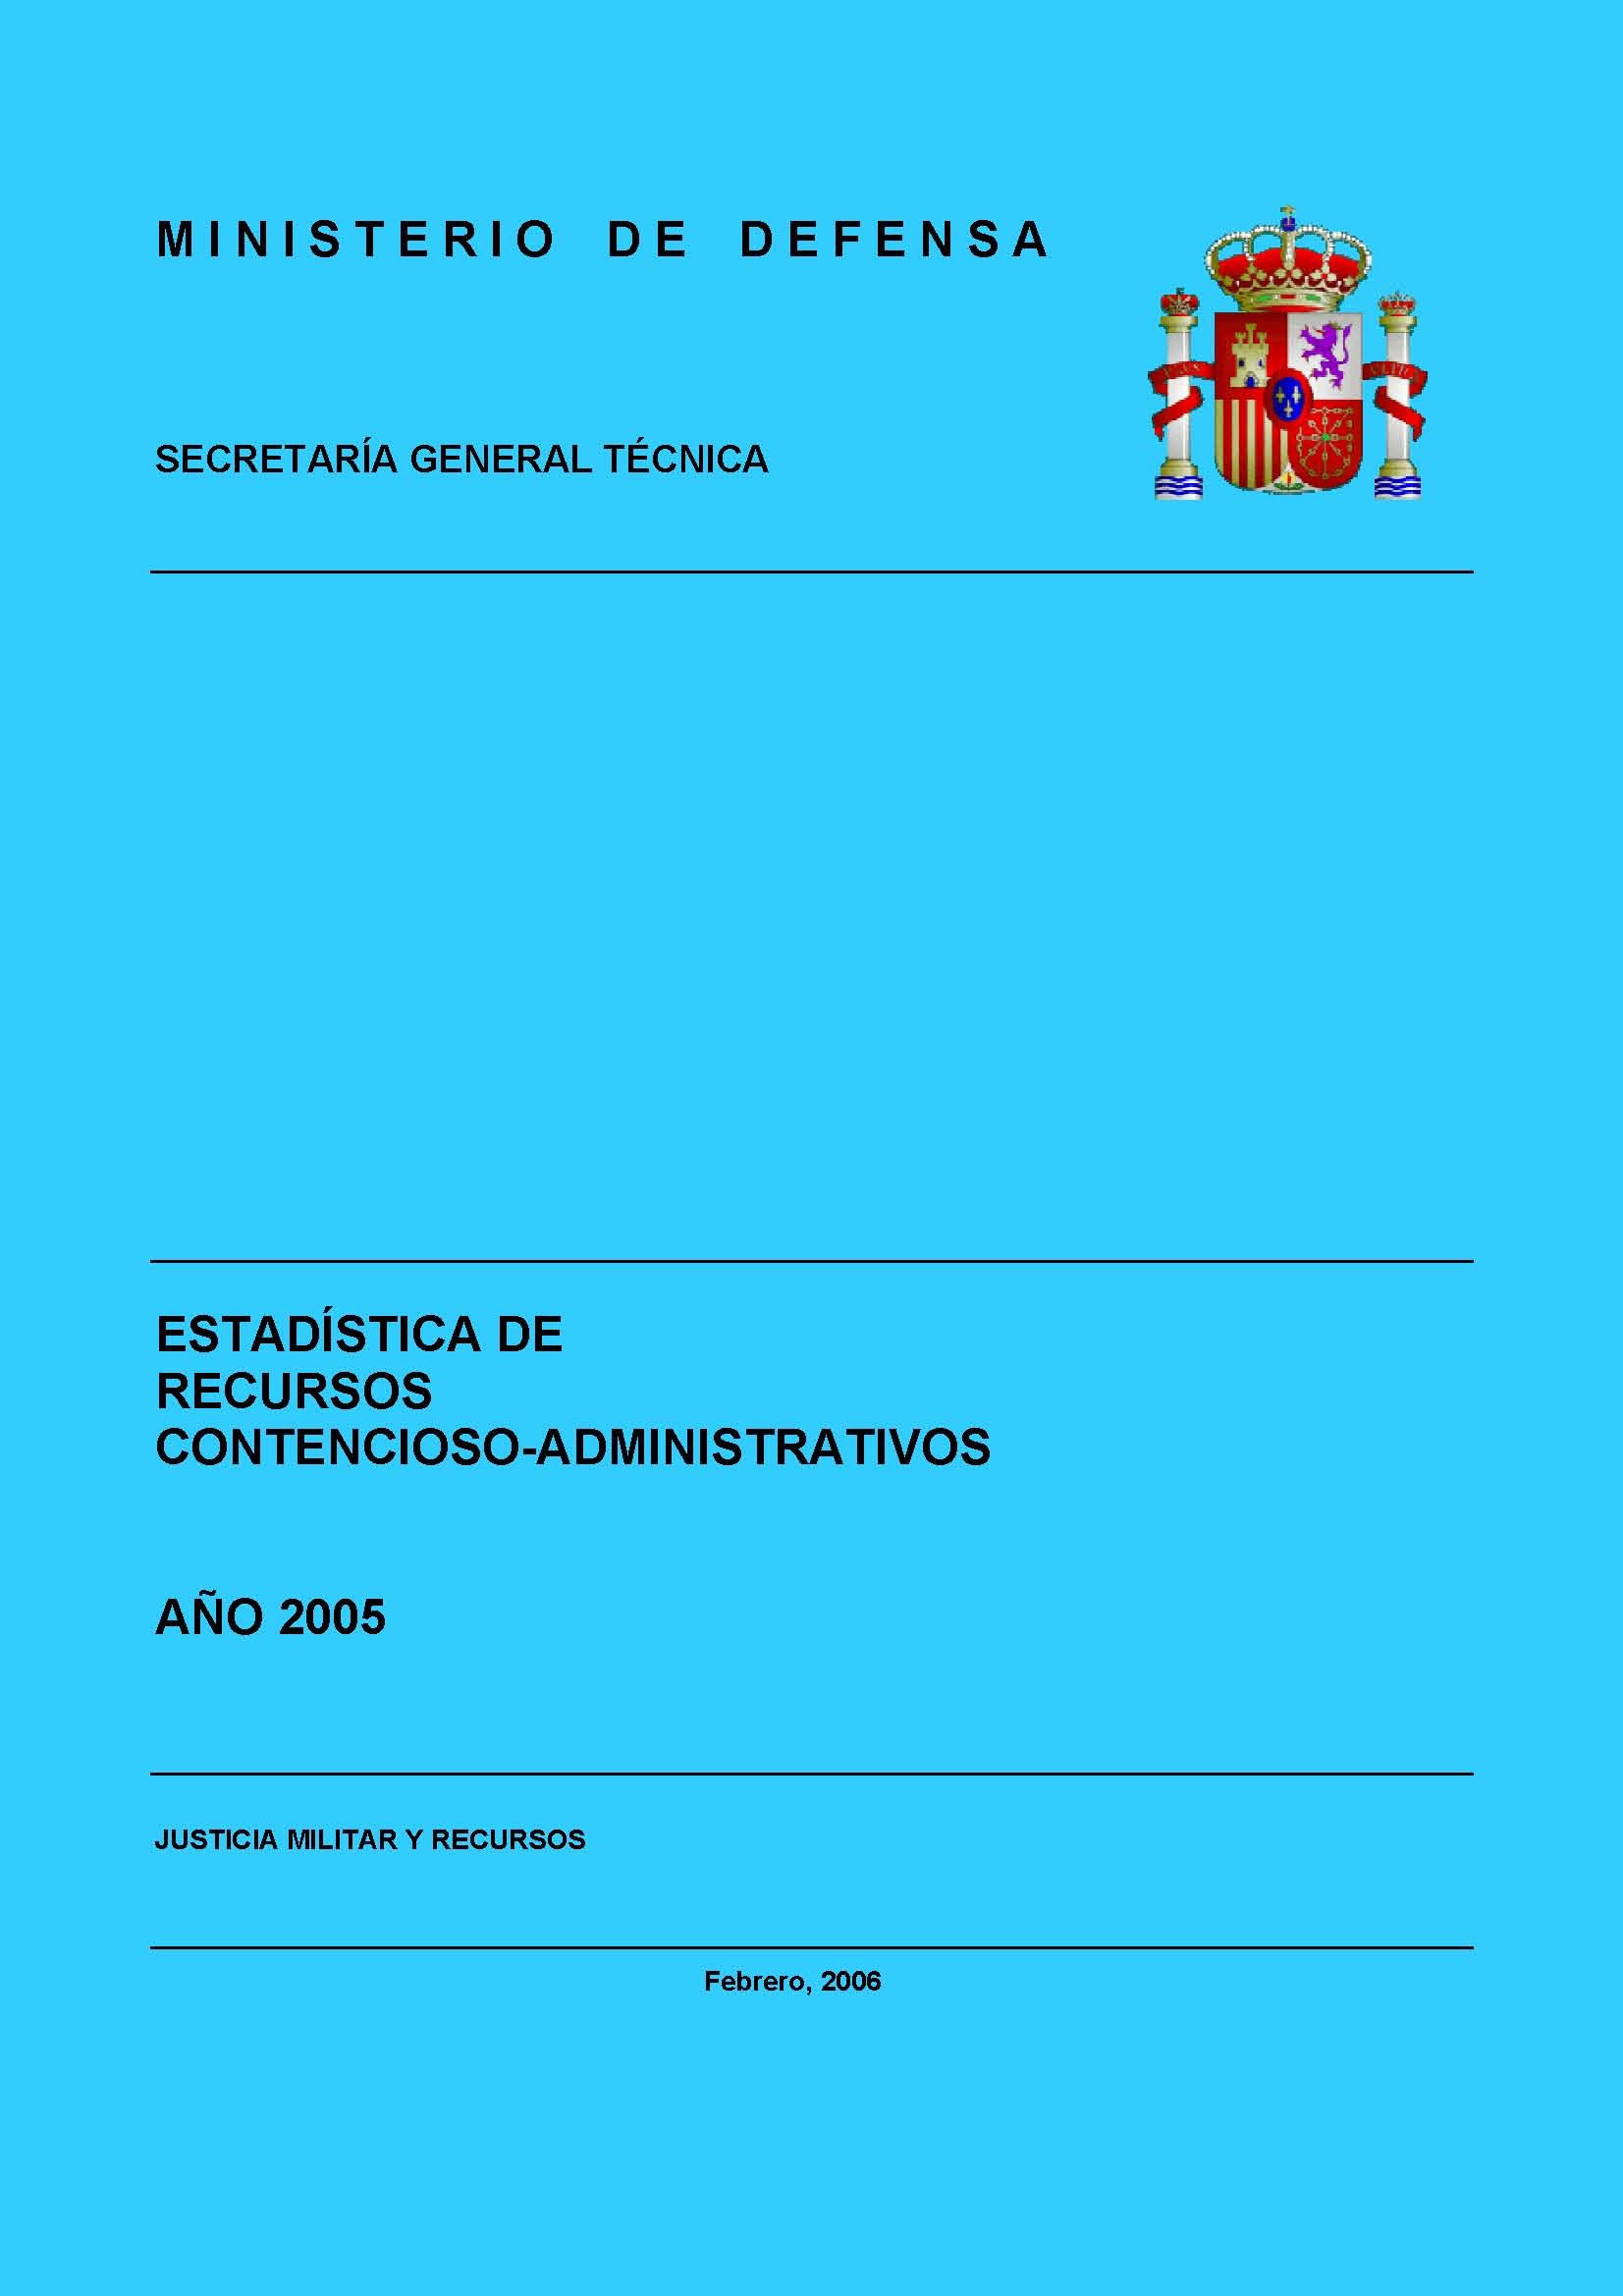 ESTADÍSTICA DE RECURSOS CONTENCIOSO-ADMINISTRATIVOS 2005